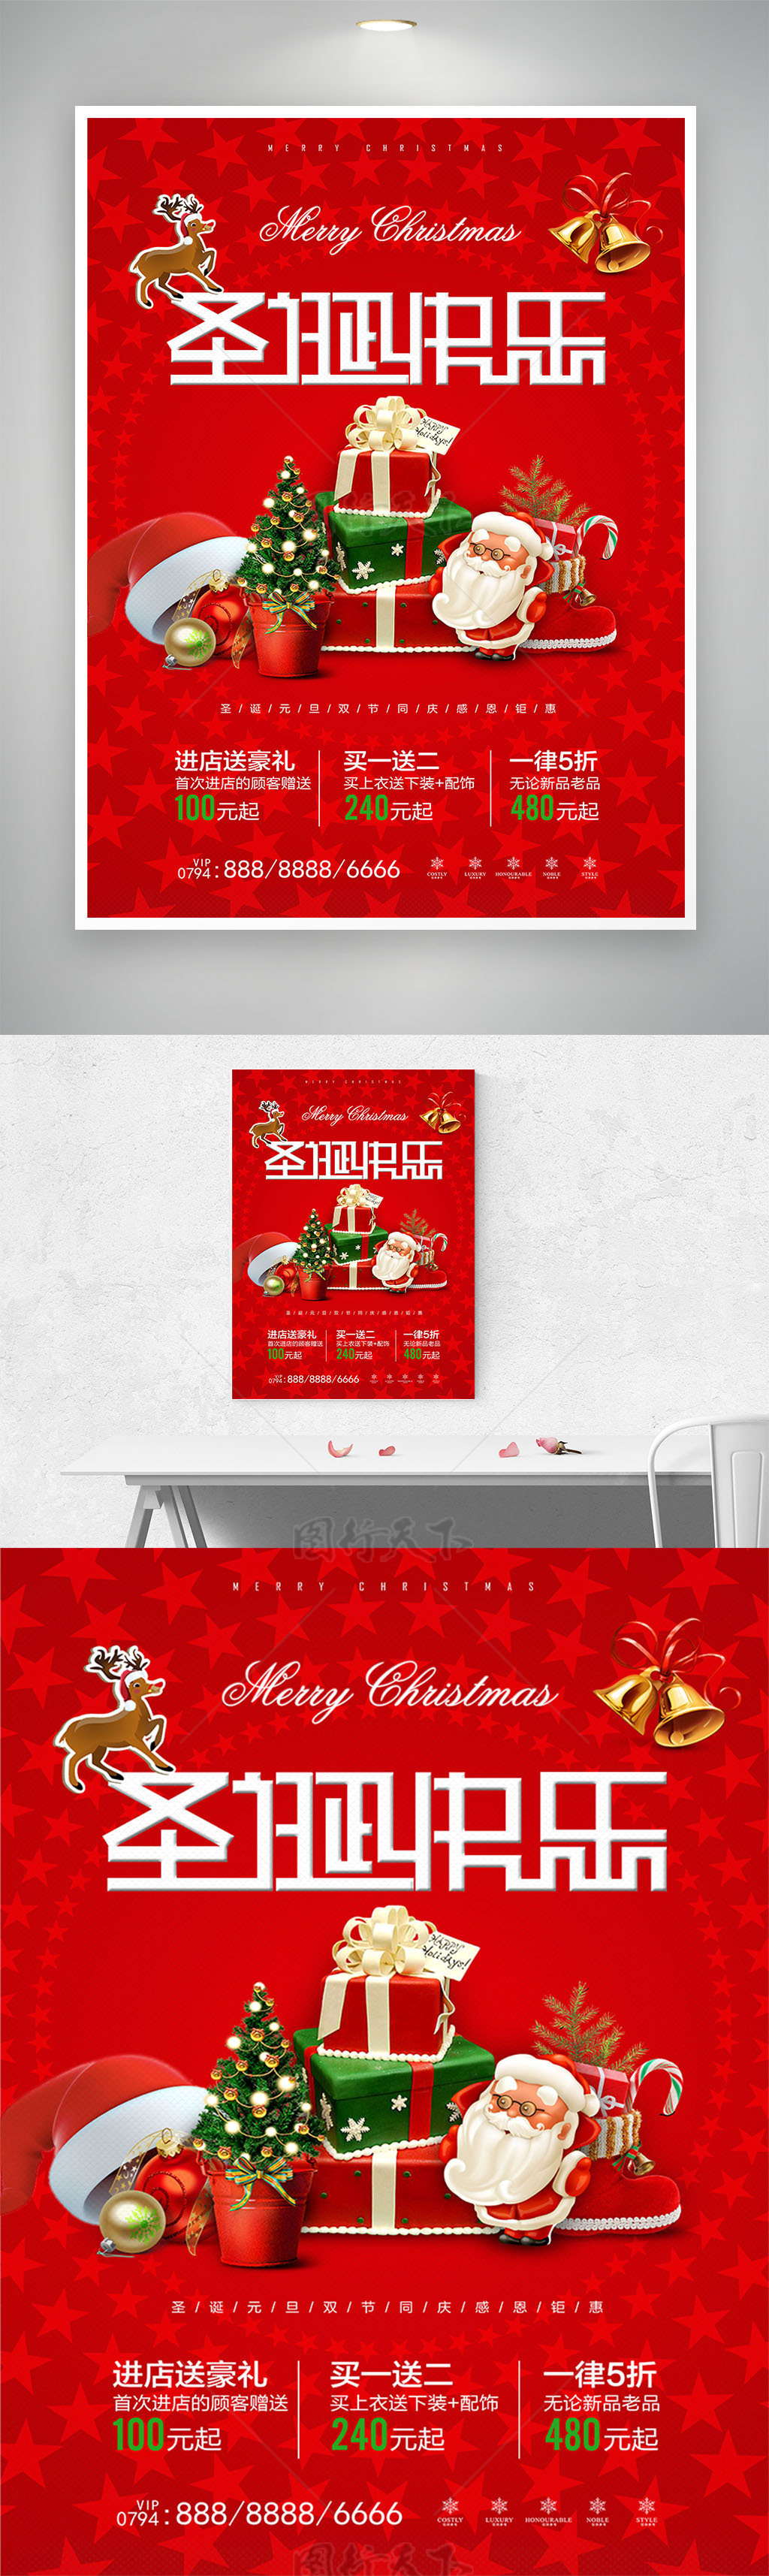 红色温馨圣诞节海报